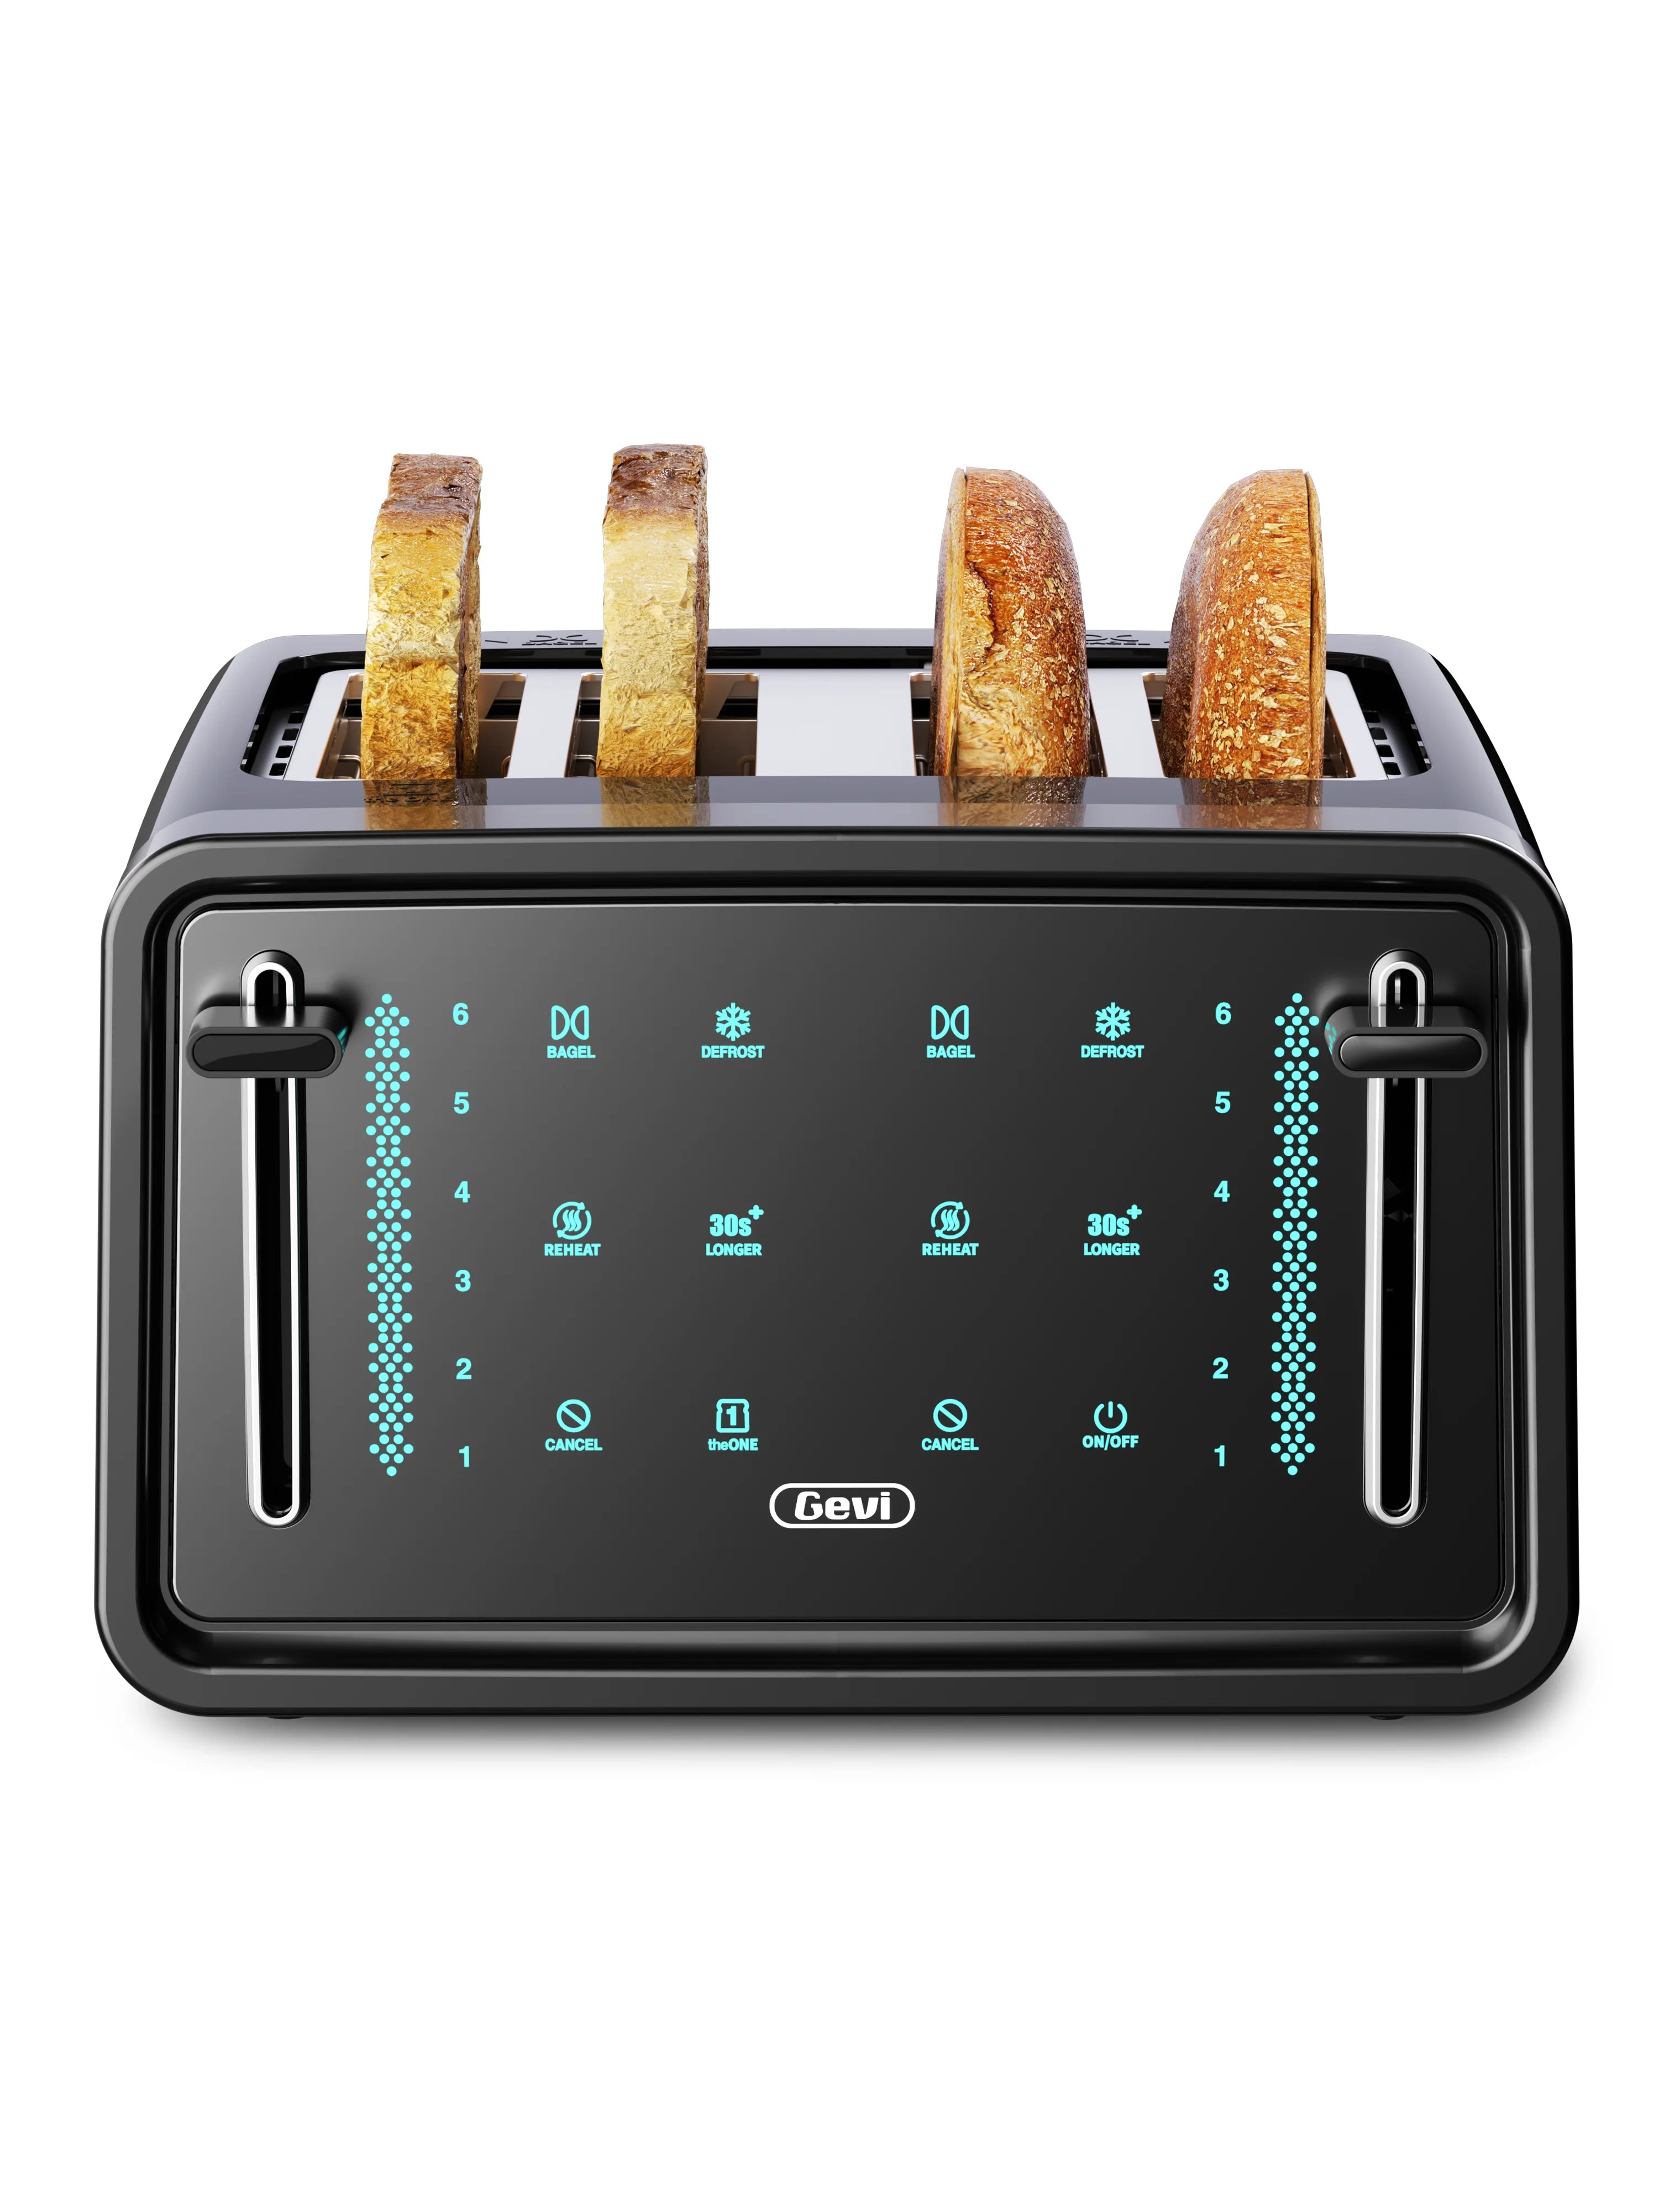 Toaster 2 Slice Wide Slot Toaster Best Rated Prime Displav Smart Black-LED